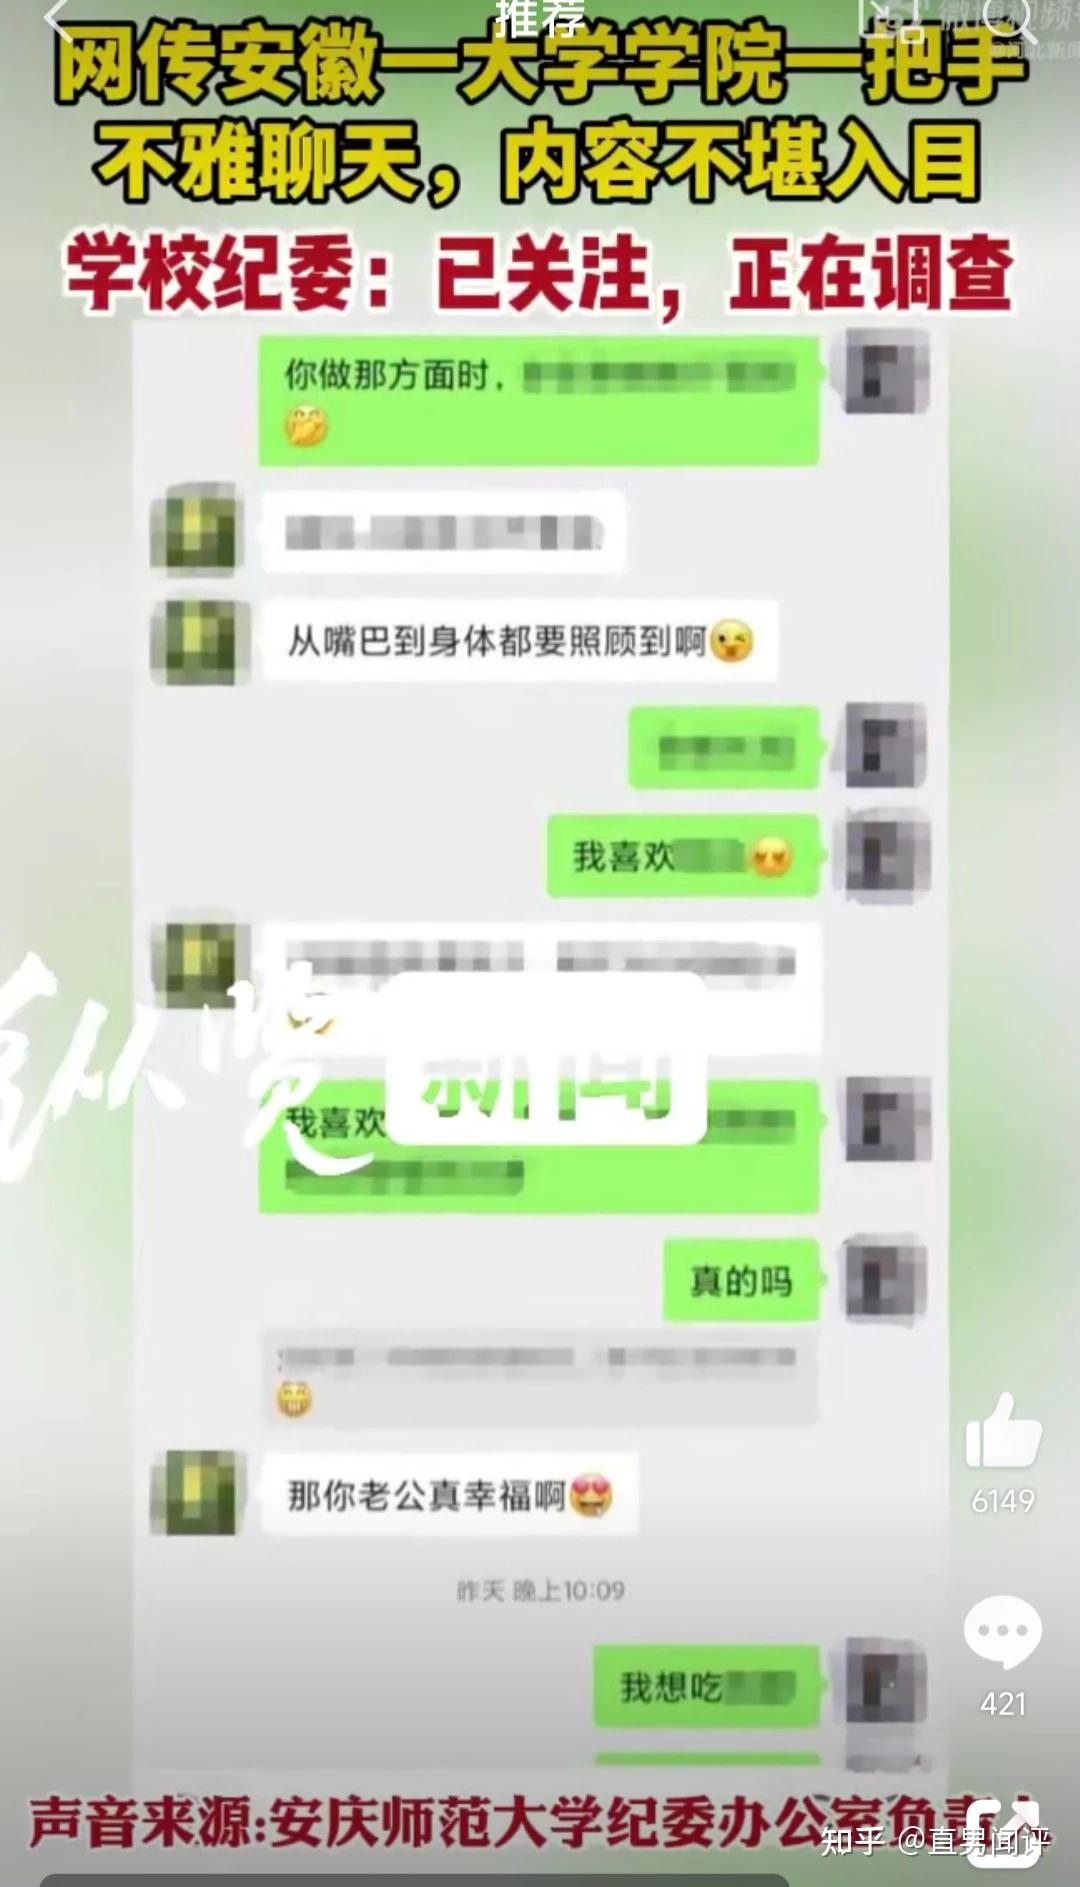 与在外国的中国人用微信聊天为什么有时候收不到信息